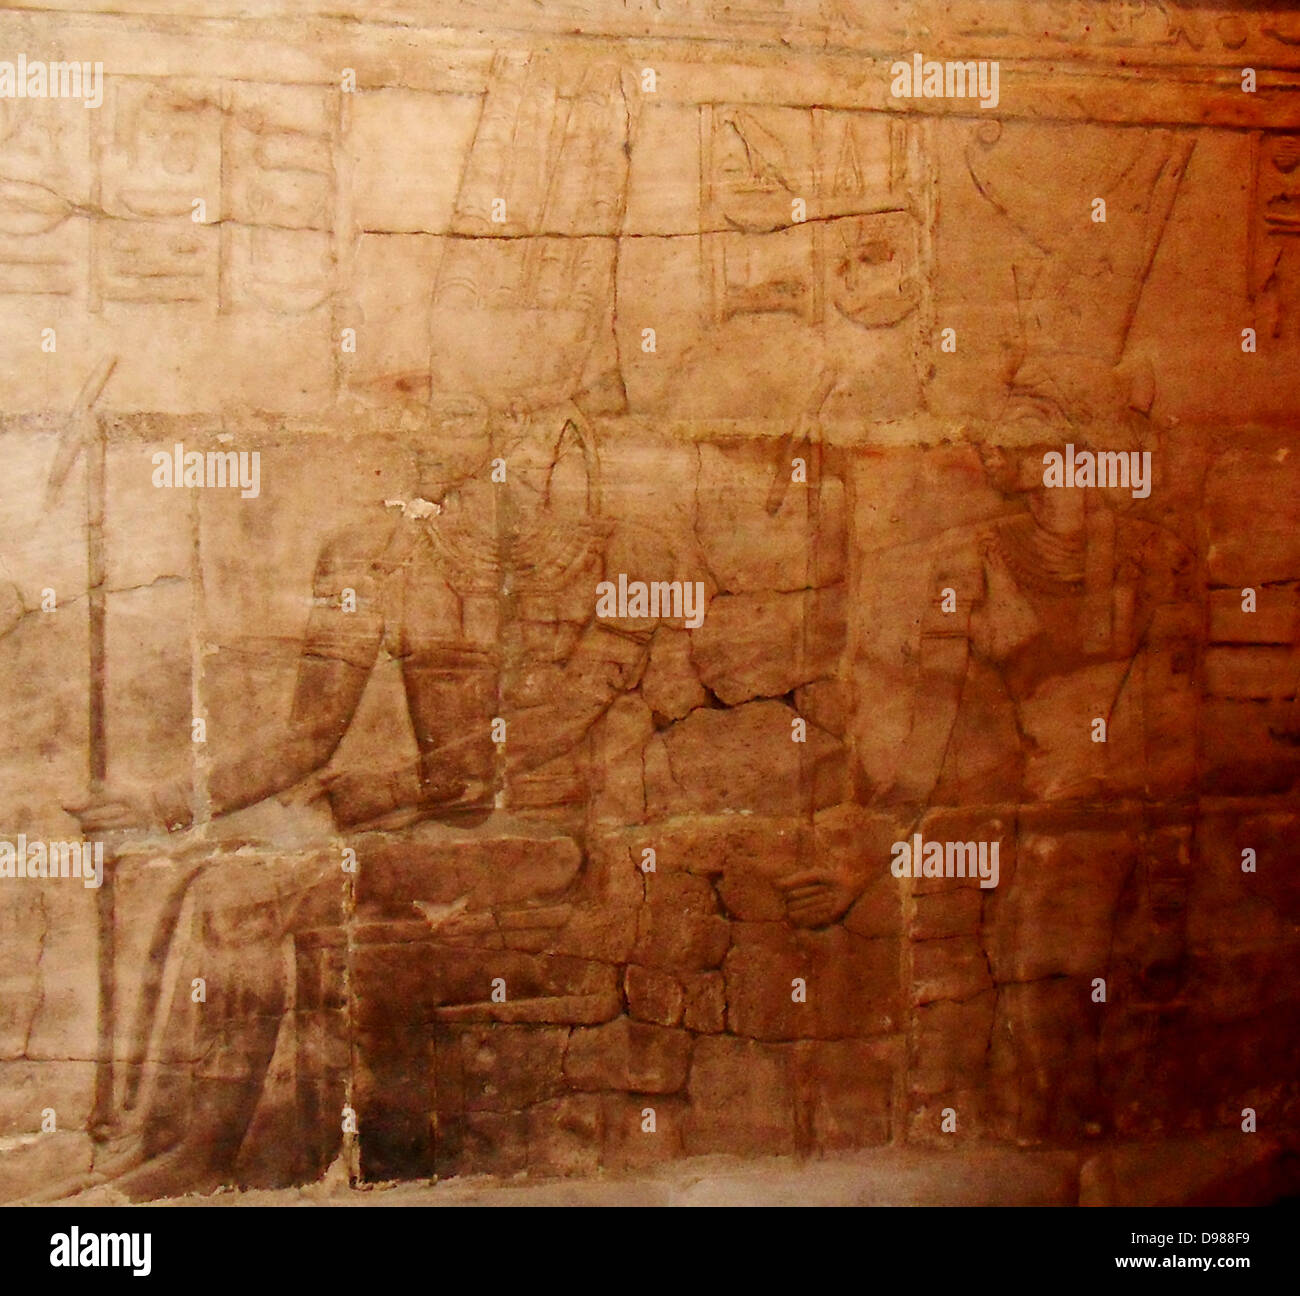 East Wall aus dem Heiligtum von taharqa der dritte in der Reihe der Kushite Könige von Ägypten, dessen Macht von Ihrer ursprünglichen Nubien in ganz Ägypten ausgedehnt, die sie als die Pharaonen der 25. Dynastie (712-657 v. Chr.) regierte. Innerhalb der Kawa Tempel stand die kleine in sich geschlossene Schrein, die jetzt im Ashmolean Museum ist. Taharqa und die Götter von Theben. Er bietet "ein weißes Brot zu seinem Vater "Amon-Re, begleitet von Mut. Stockfoto